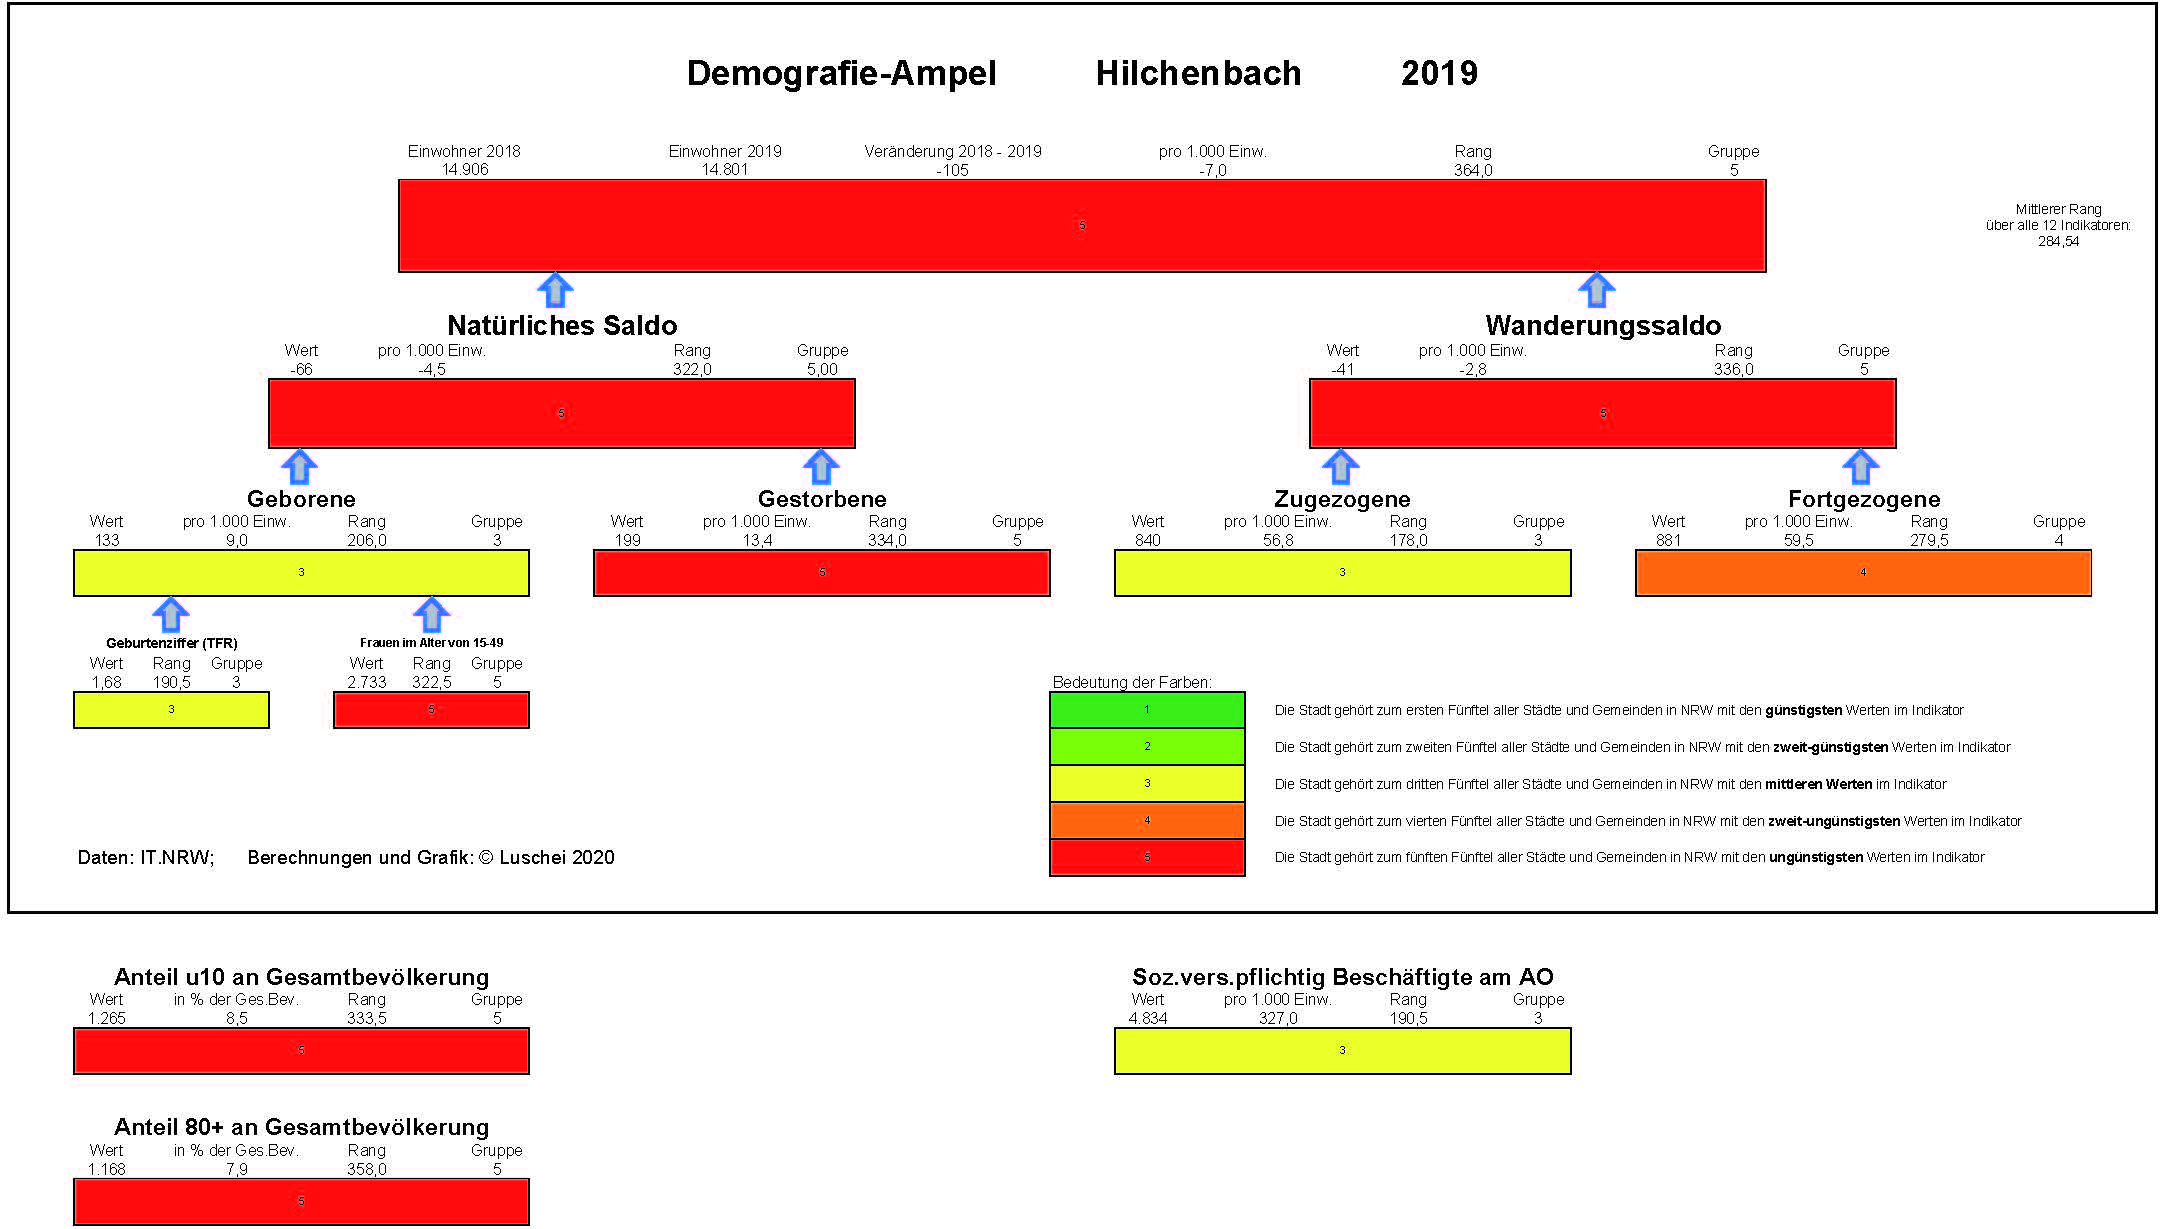 Demografie Ampel 2019 Hilchenbach